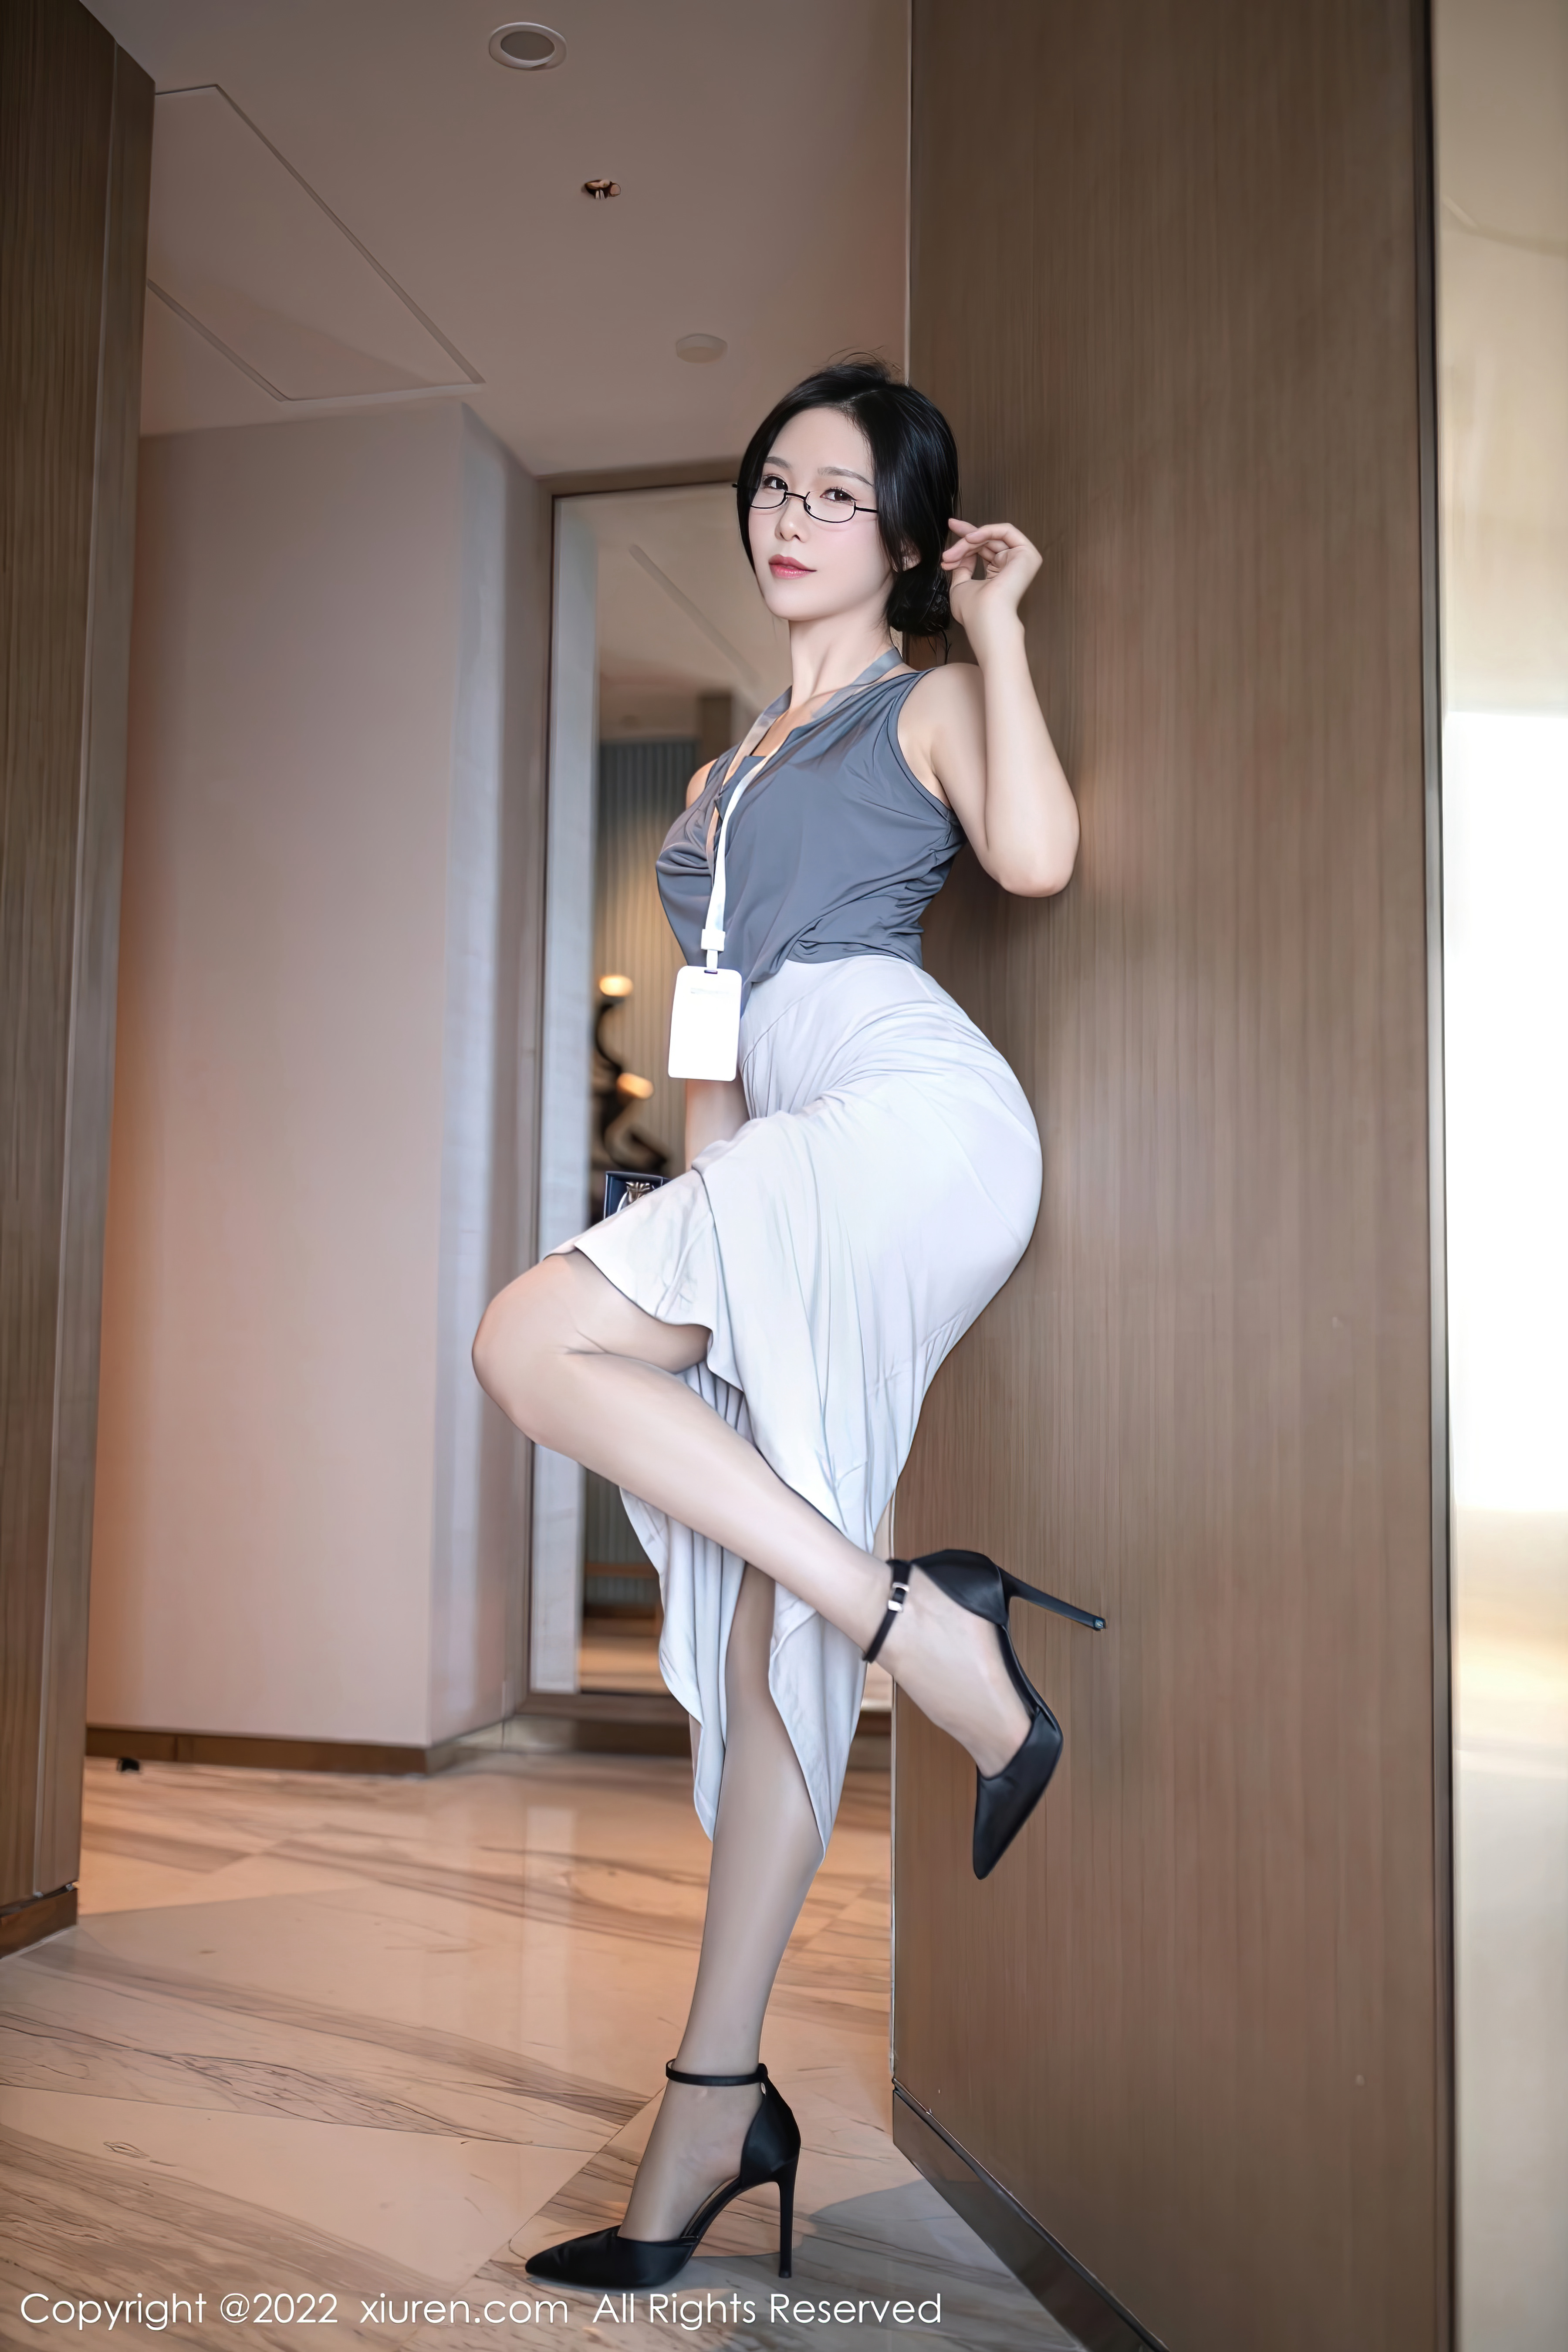 XiuRen-No.5900-利世-灰色上衣配白长裙半撩露蕾丝内裤